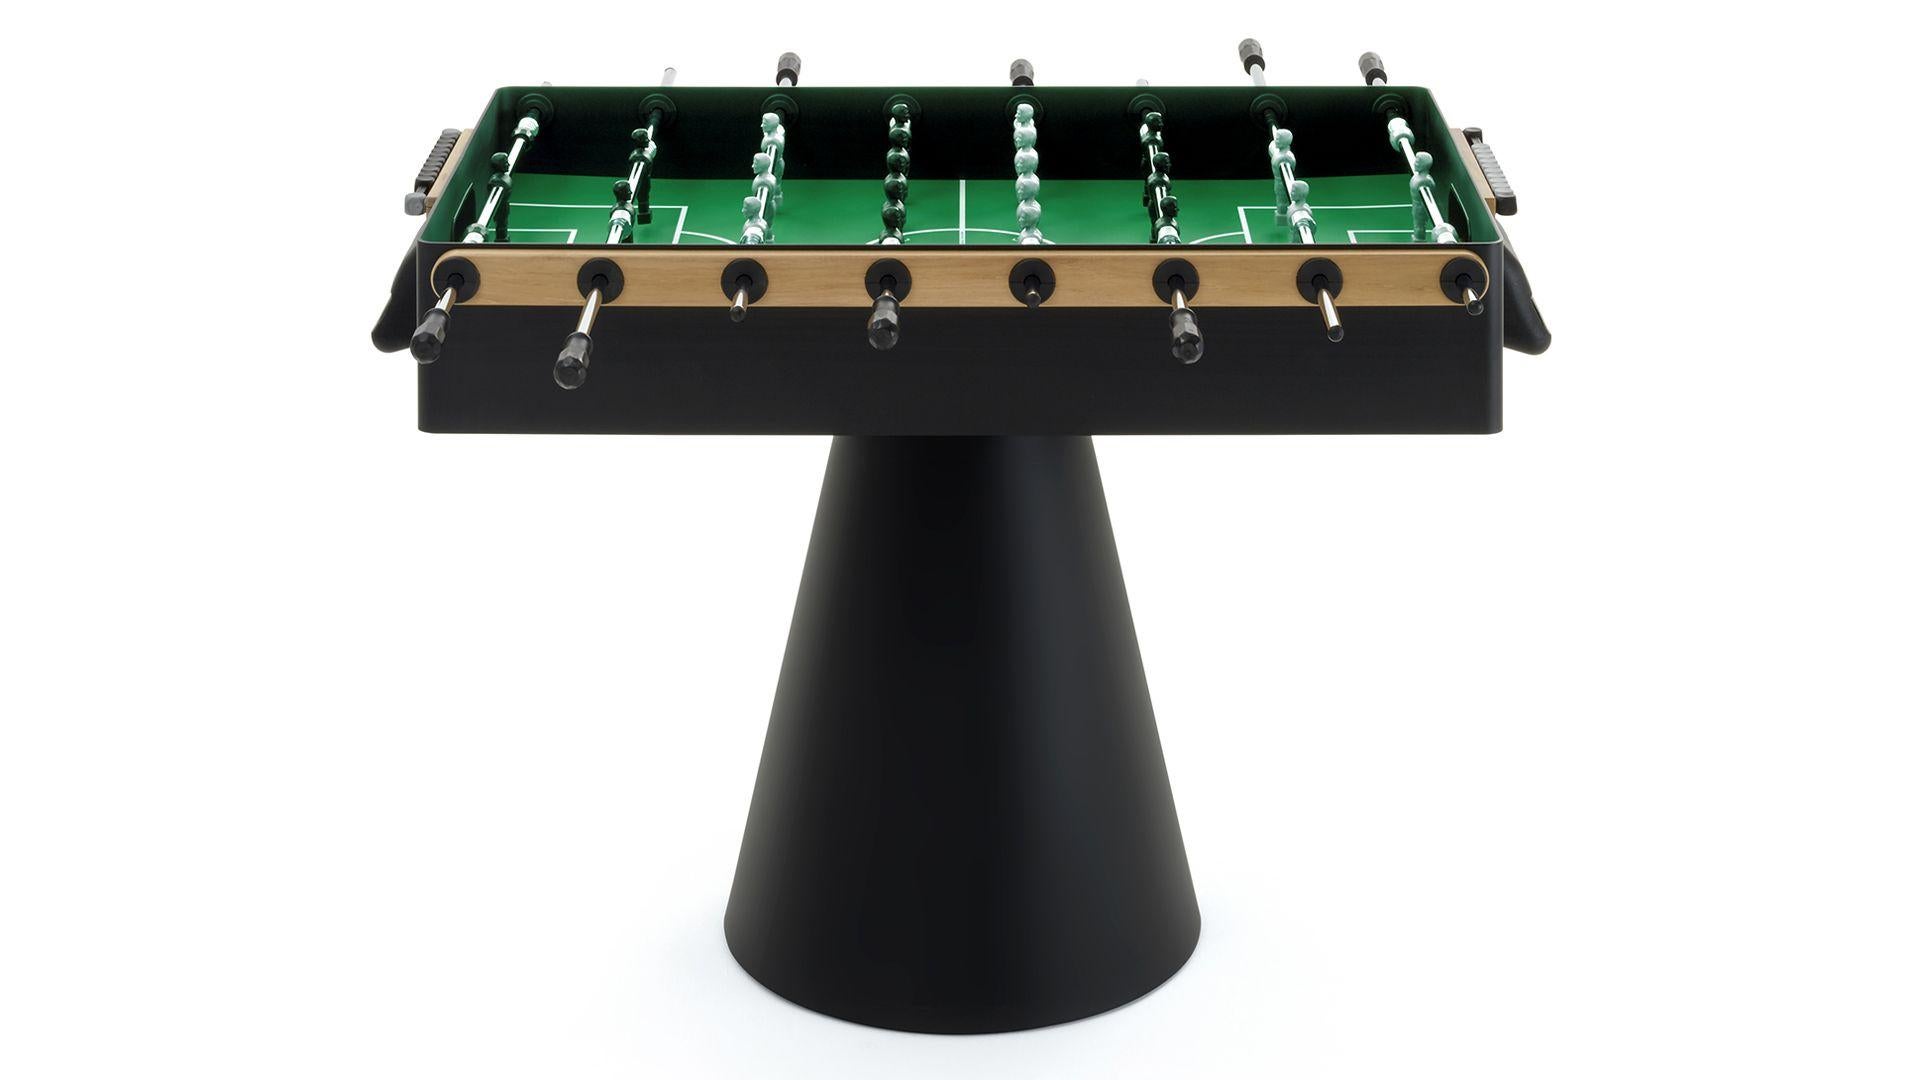 Dieser Profi-Fußballtisch ist einzigartig in seiner Art: Er verzichtet auf das übliche Konzept eines 4-Bein-Tisches und verwendet stattdessen einen Kegelstumpf als Basis. Dies ist eine großartige Innovation, die dem Produkt Stabilität und Eleganz